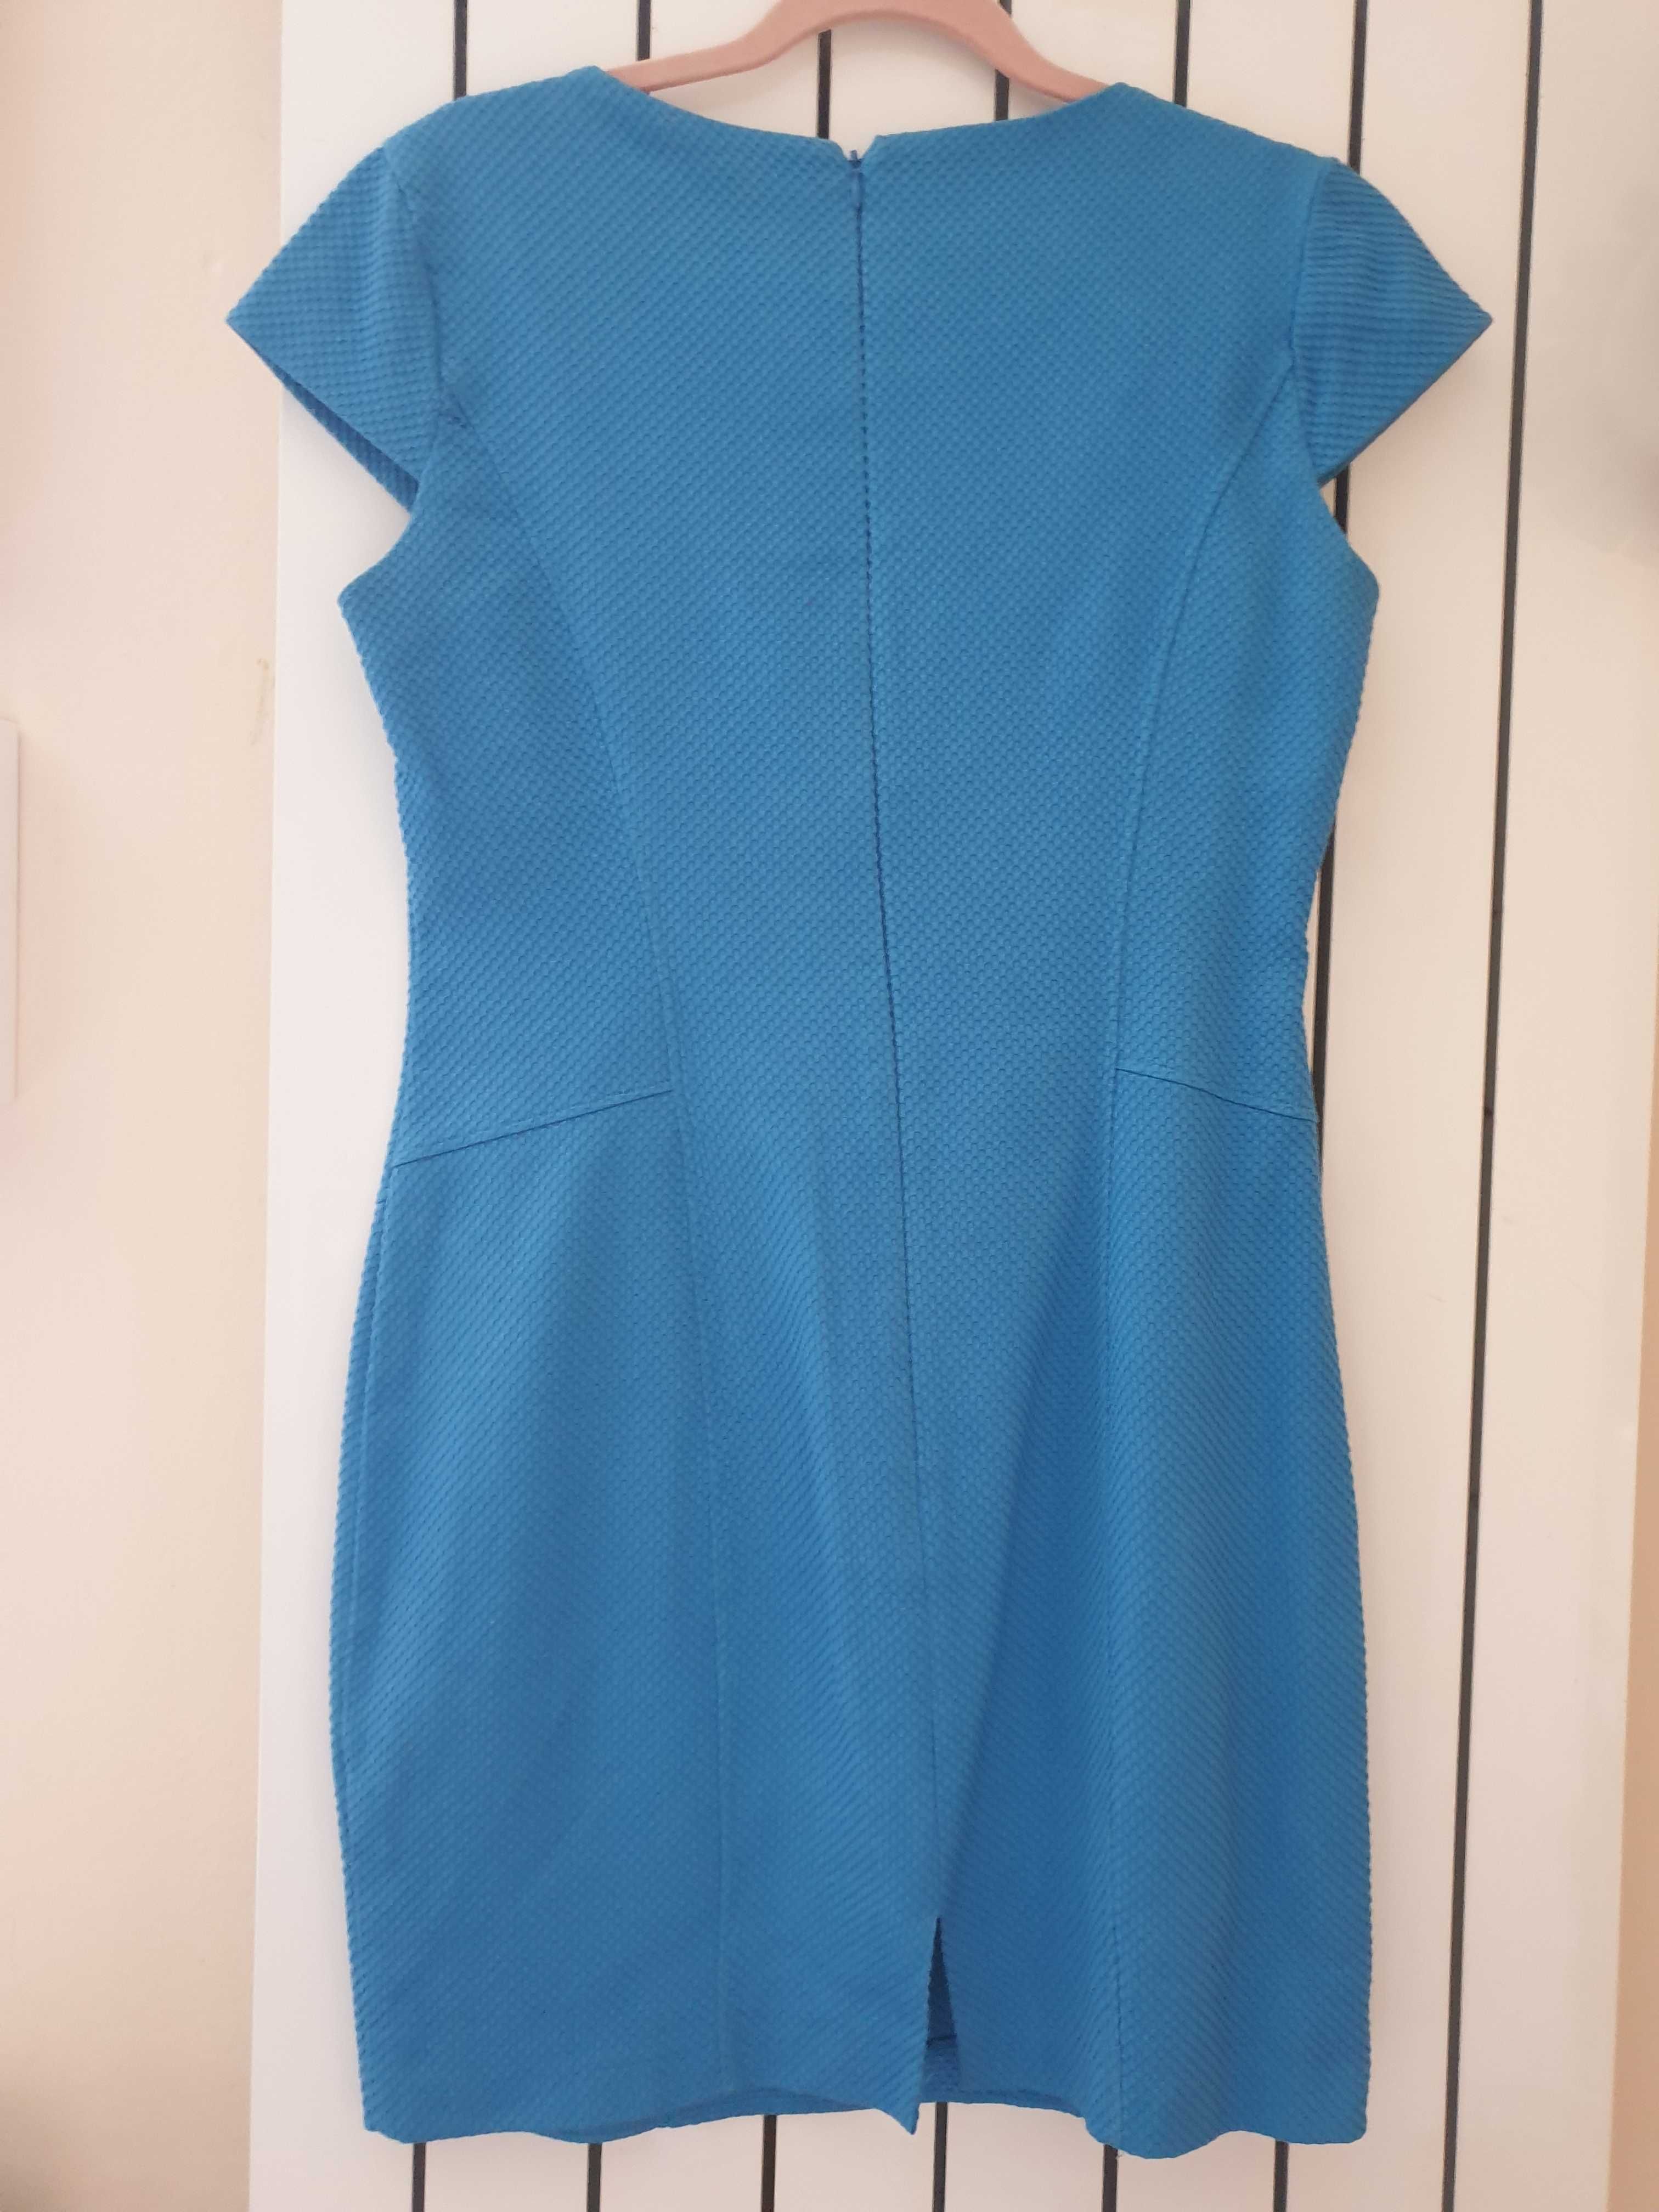 Błękitna sukienka mini Oasis r. 38/40